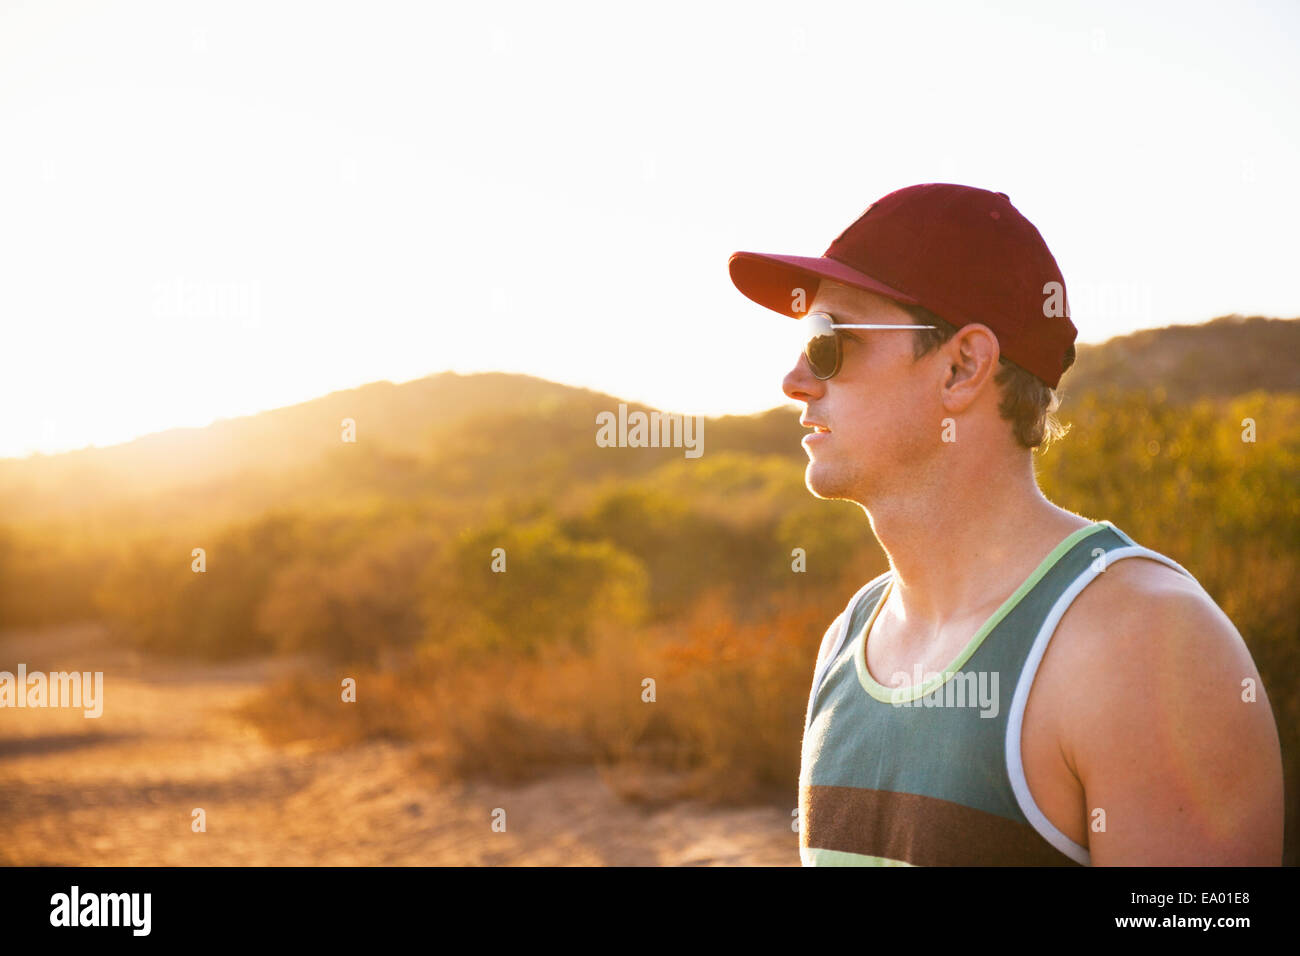 Männliche Jogger mit Sonnenbrille und Baseball-Cap, Poway, Kalifornien, USA Stockfoto